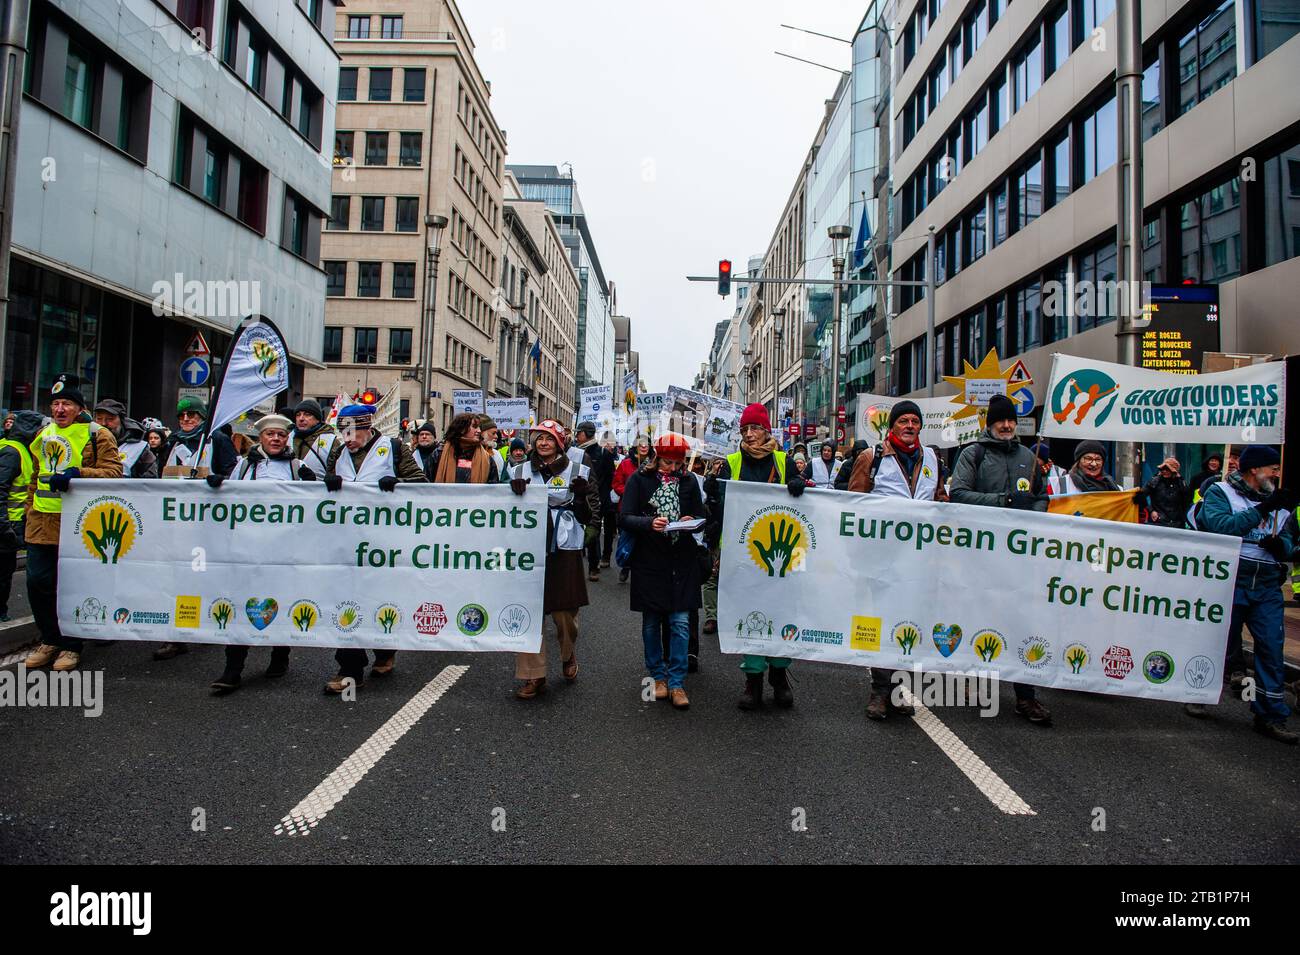 HUB de mobilisation pour la justice climatique